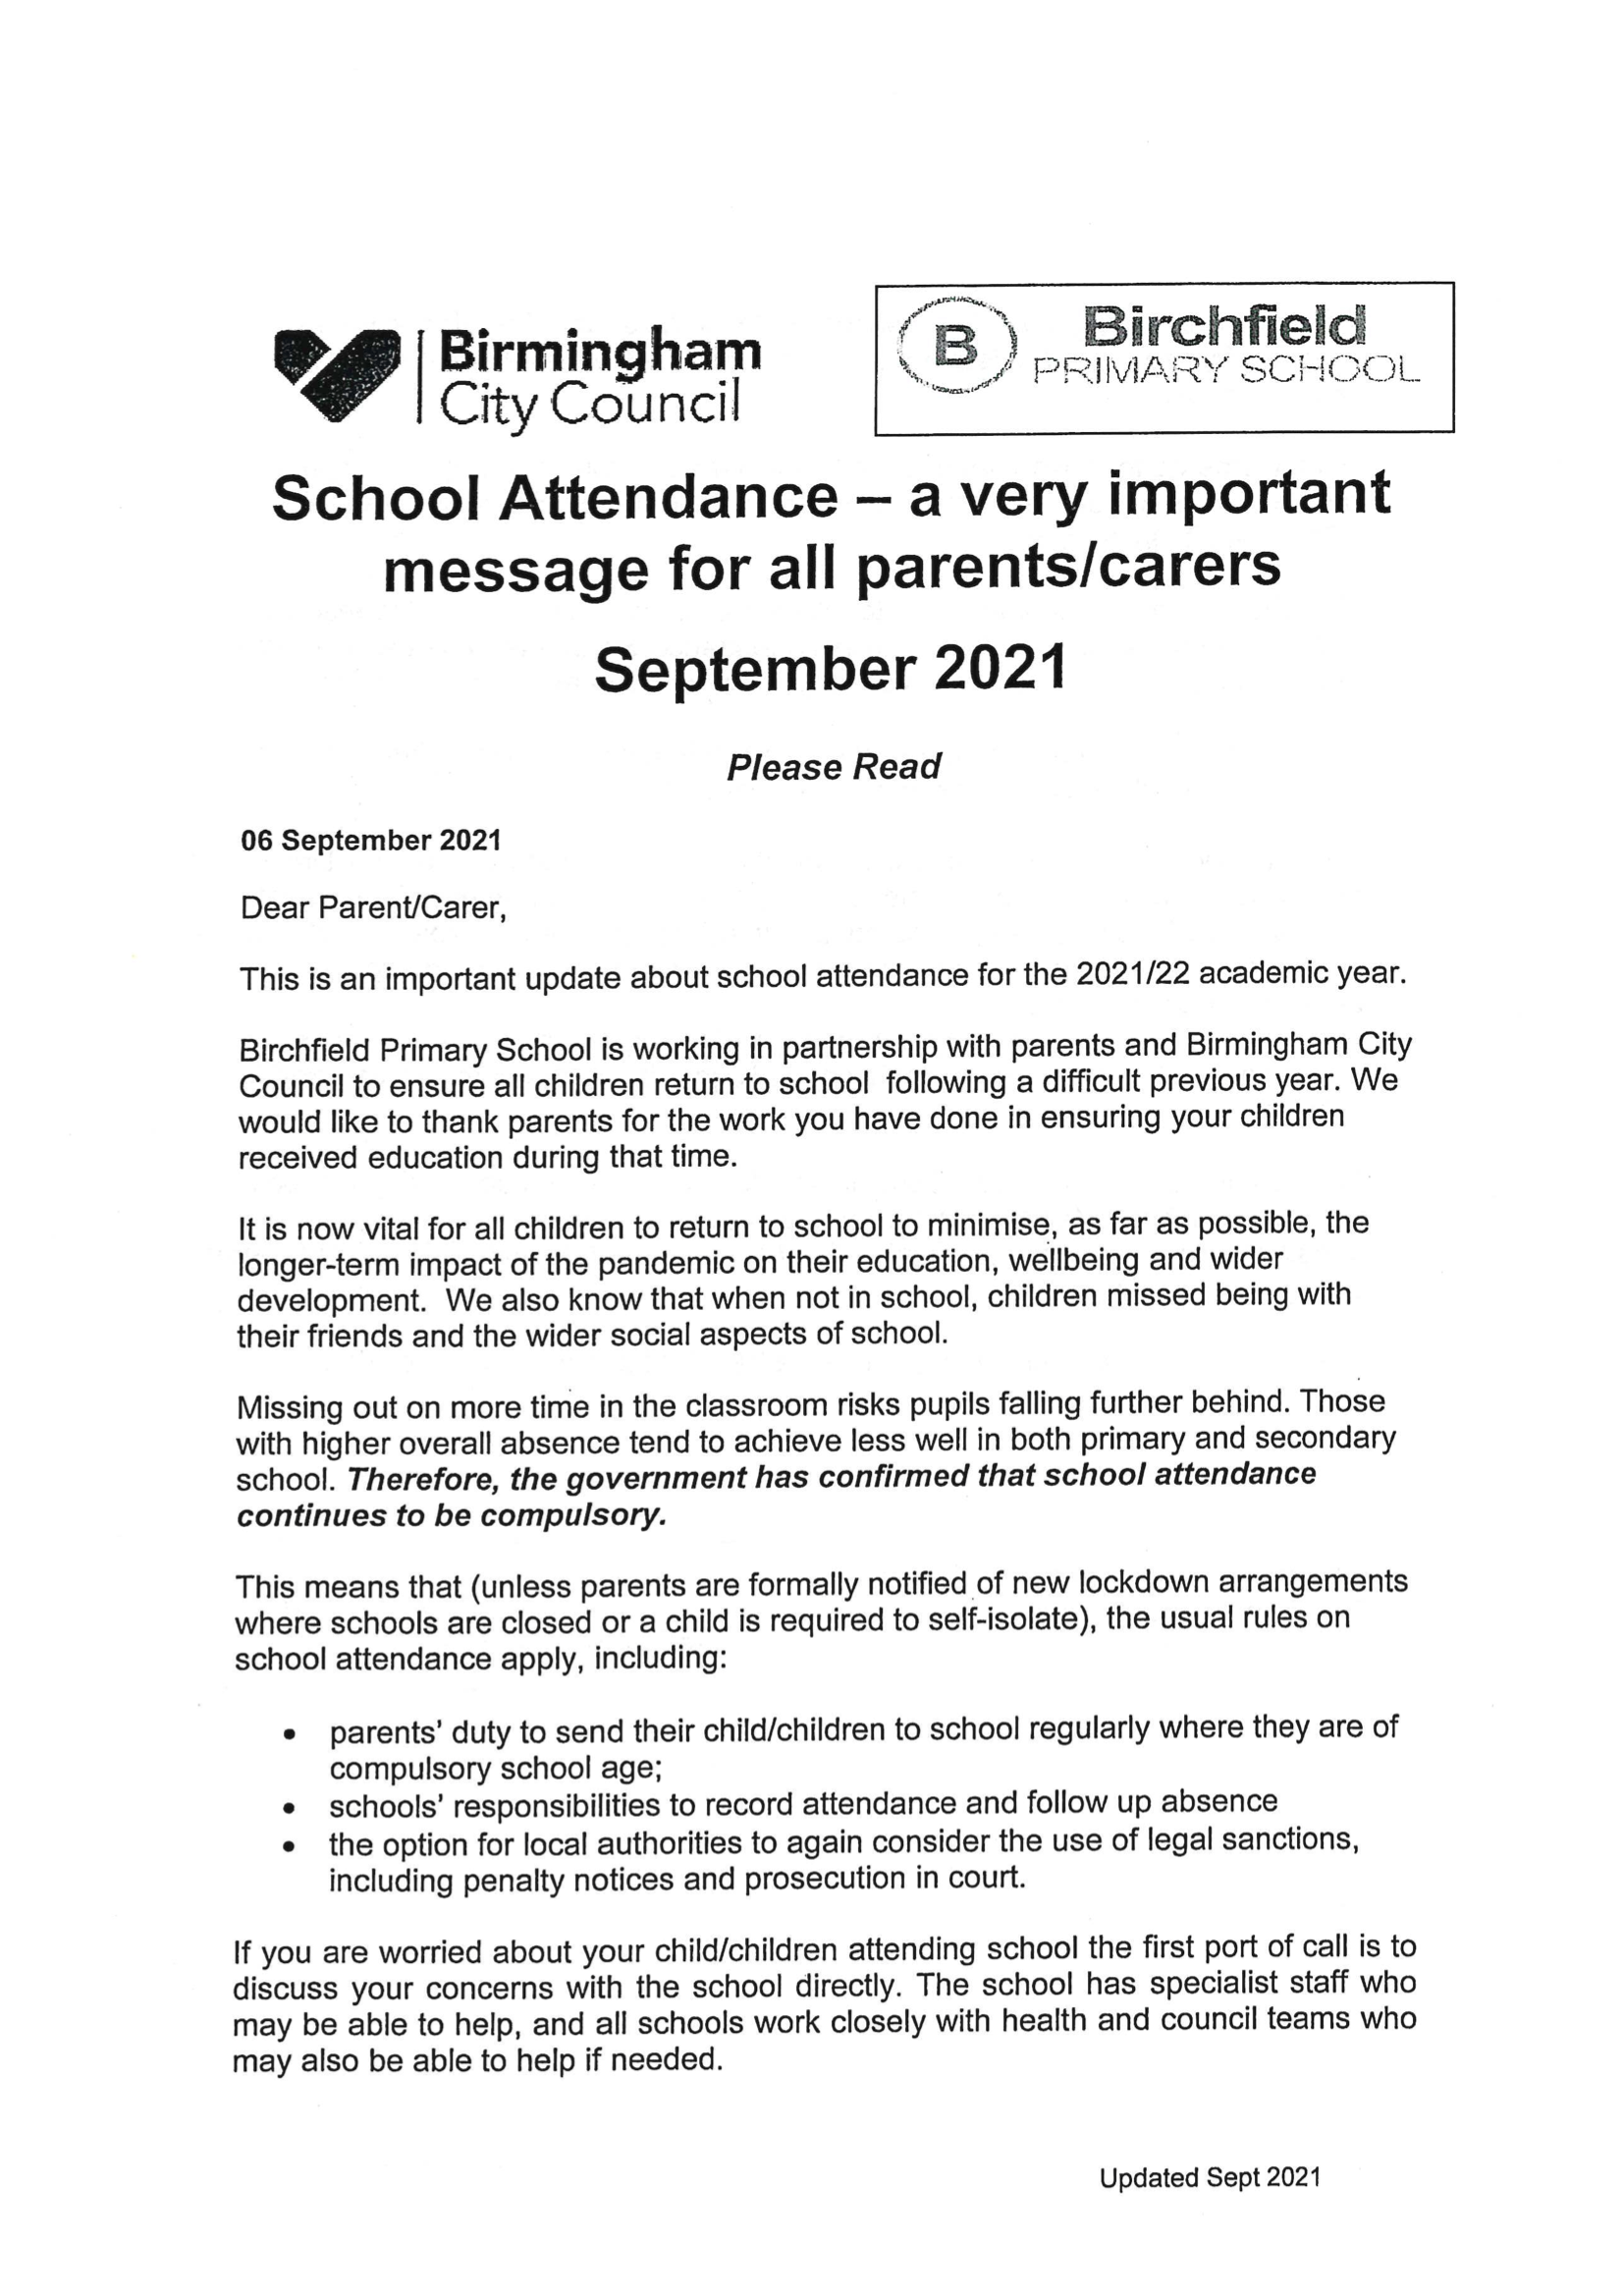 School attendance Sept 2021a